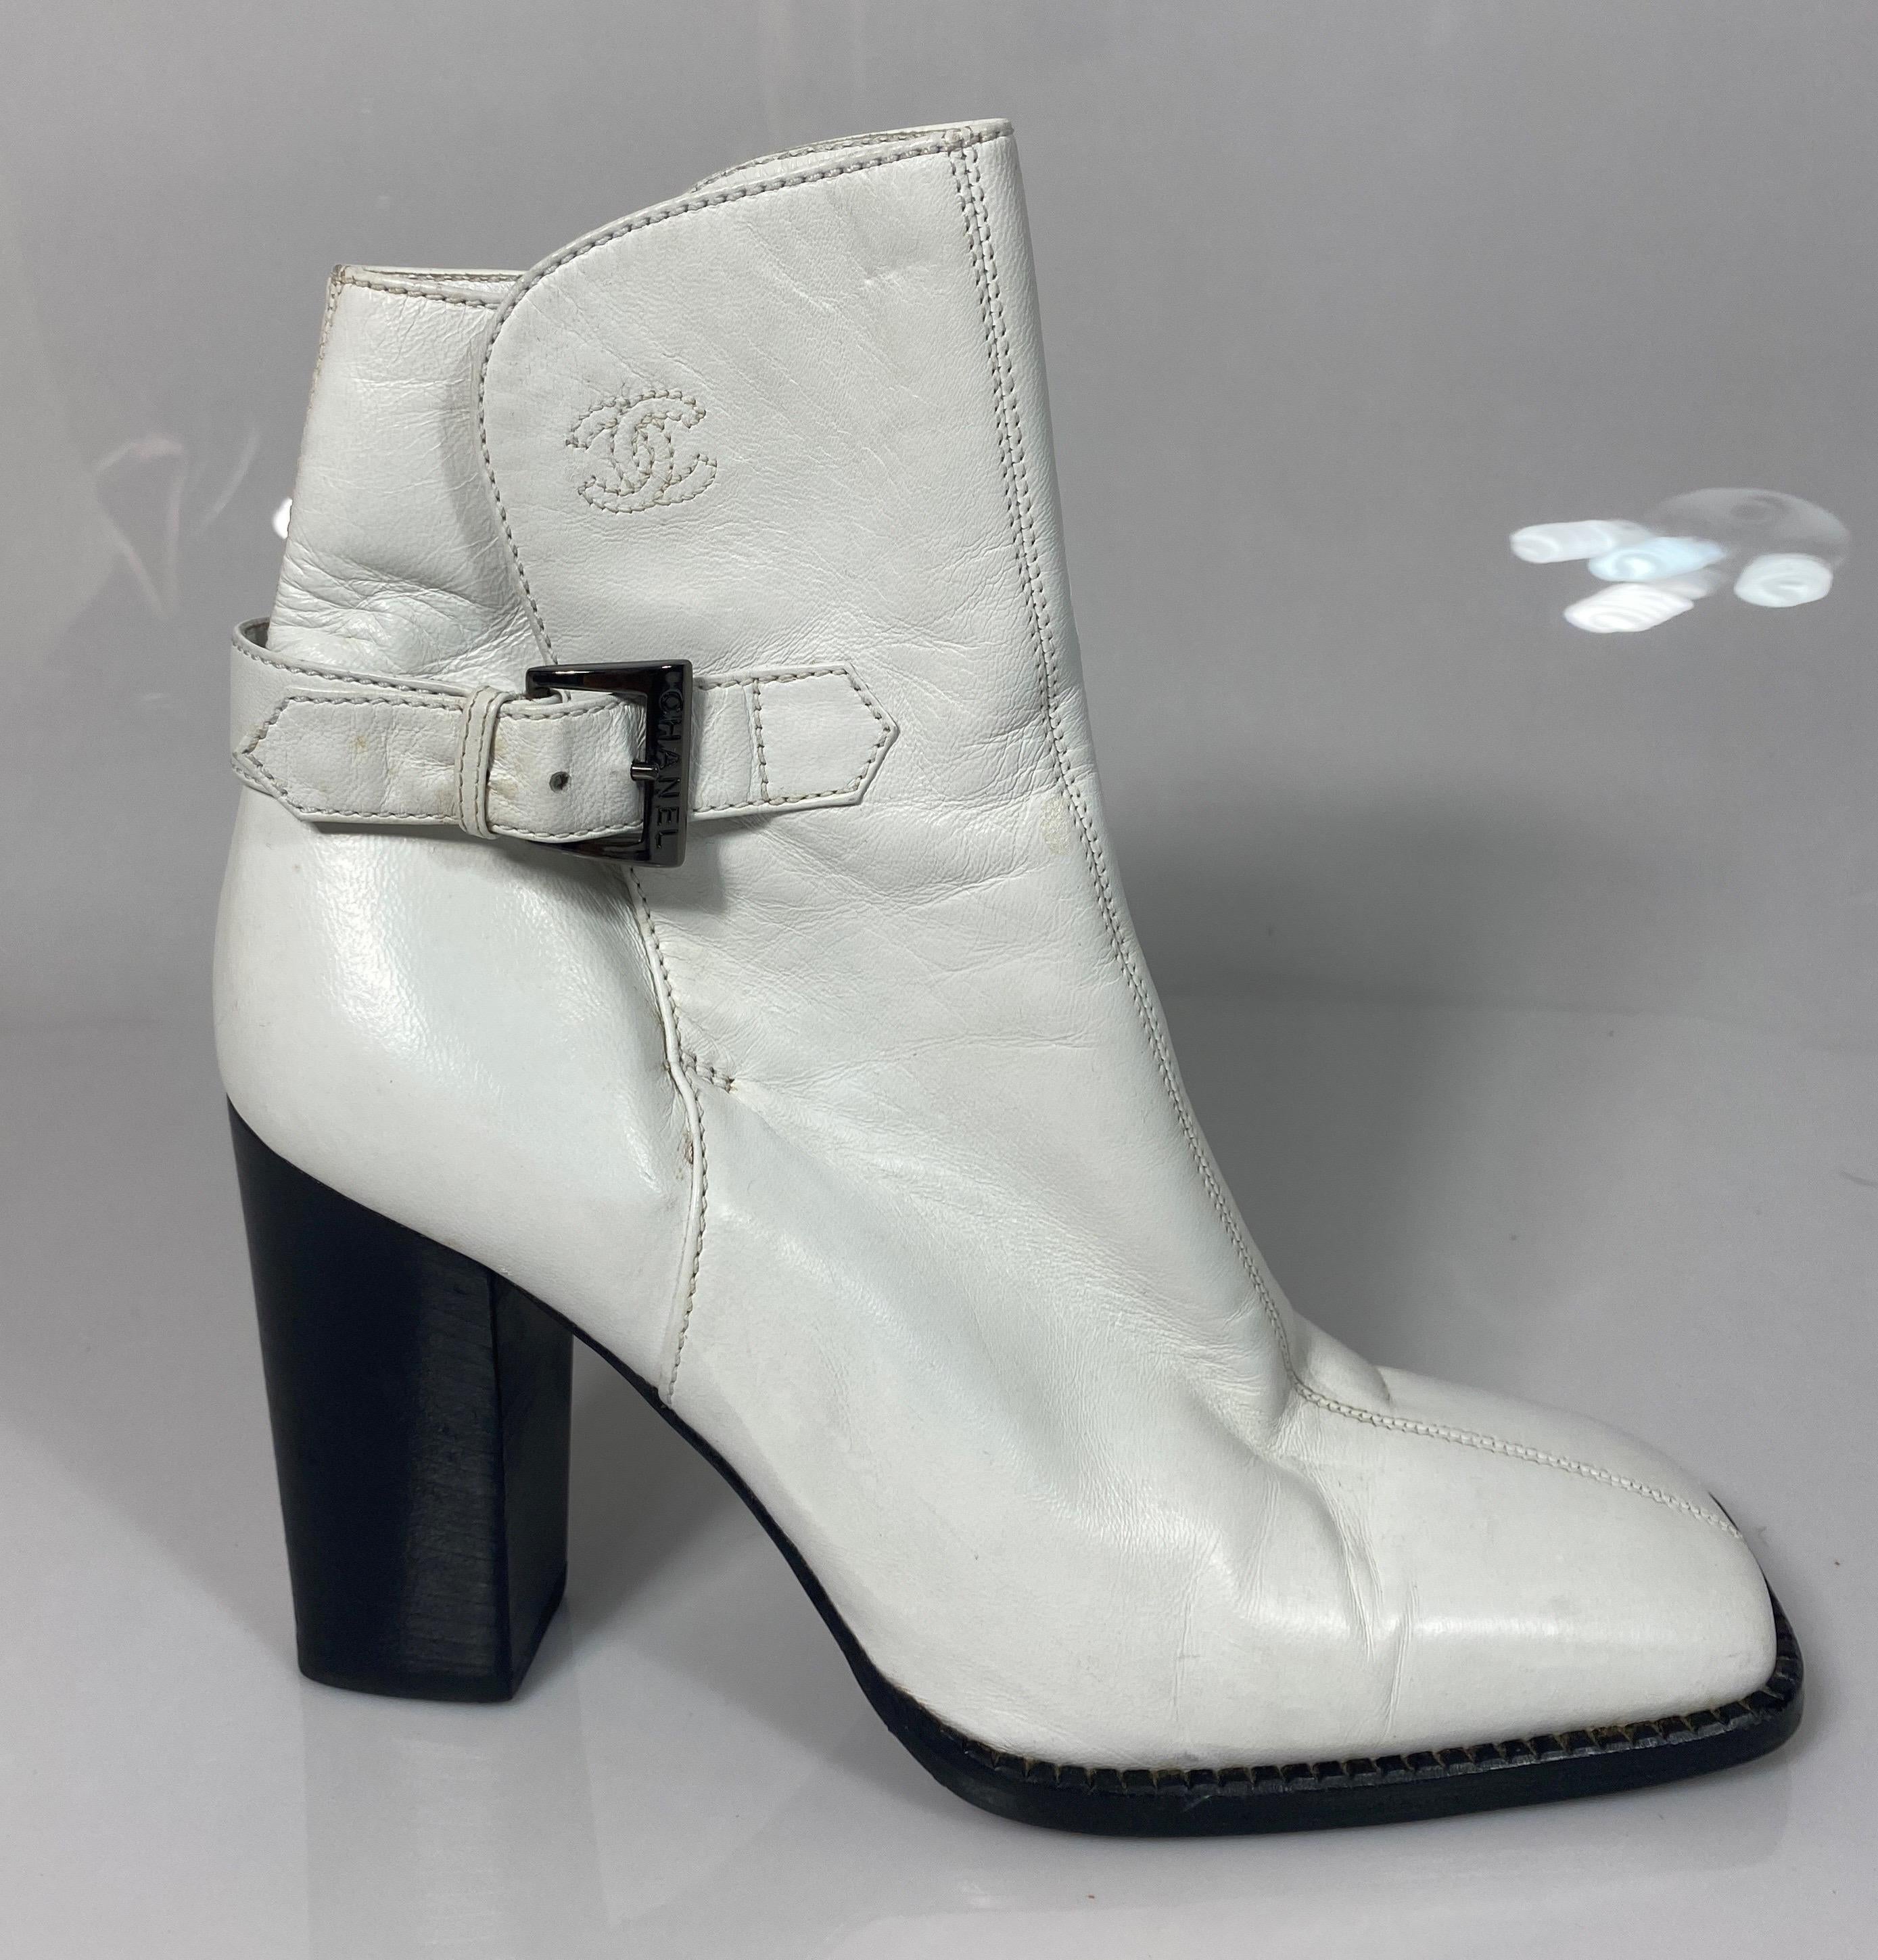 Chanel White Leather Chunky Wood Stack Heel Short Boot -Size 36.5. Cette rare bottine blanche de Chanel est telle que décrite ci-dessous :
Boîte à orteils carrée
Hauteur de talon de 3,75 pouces
1.25